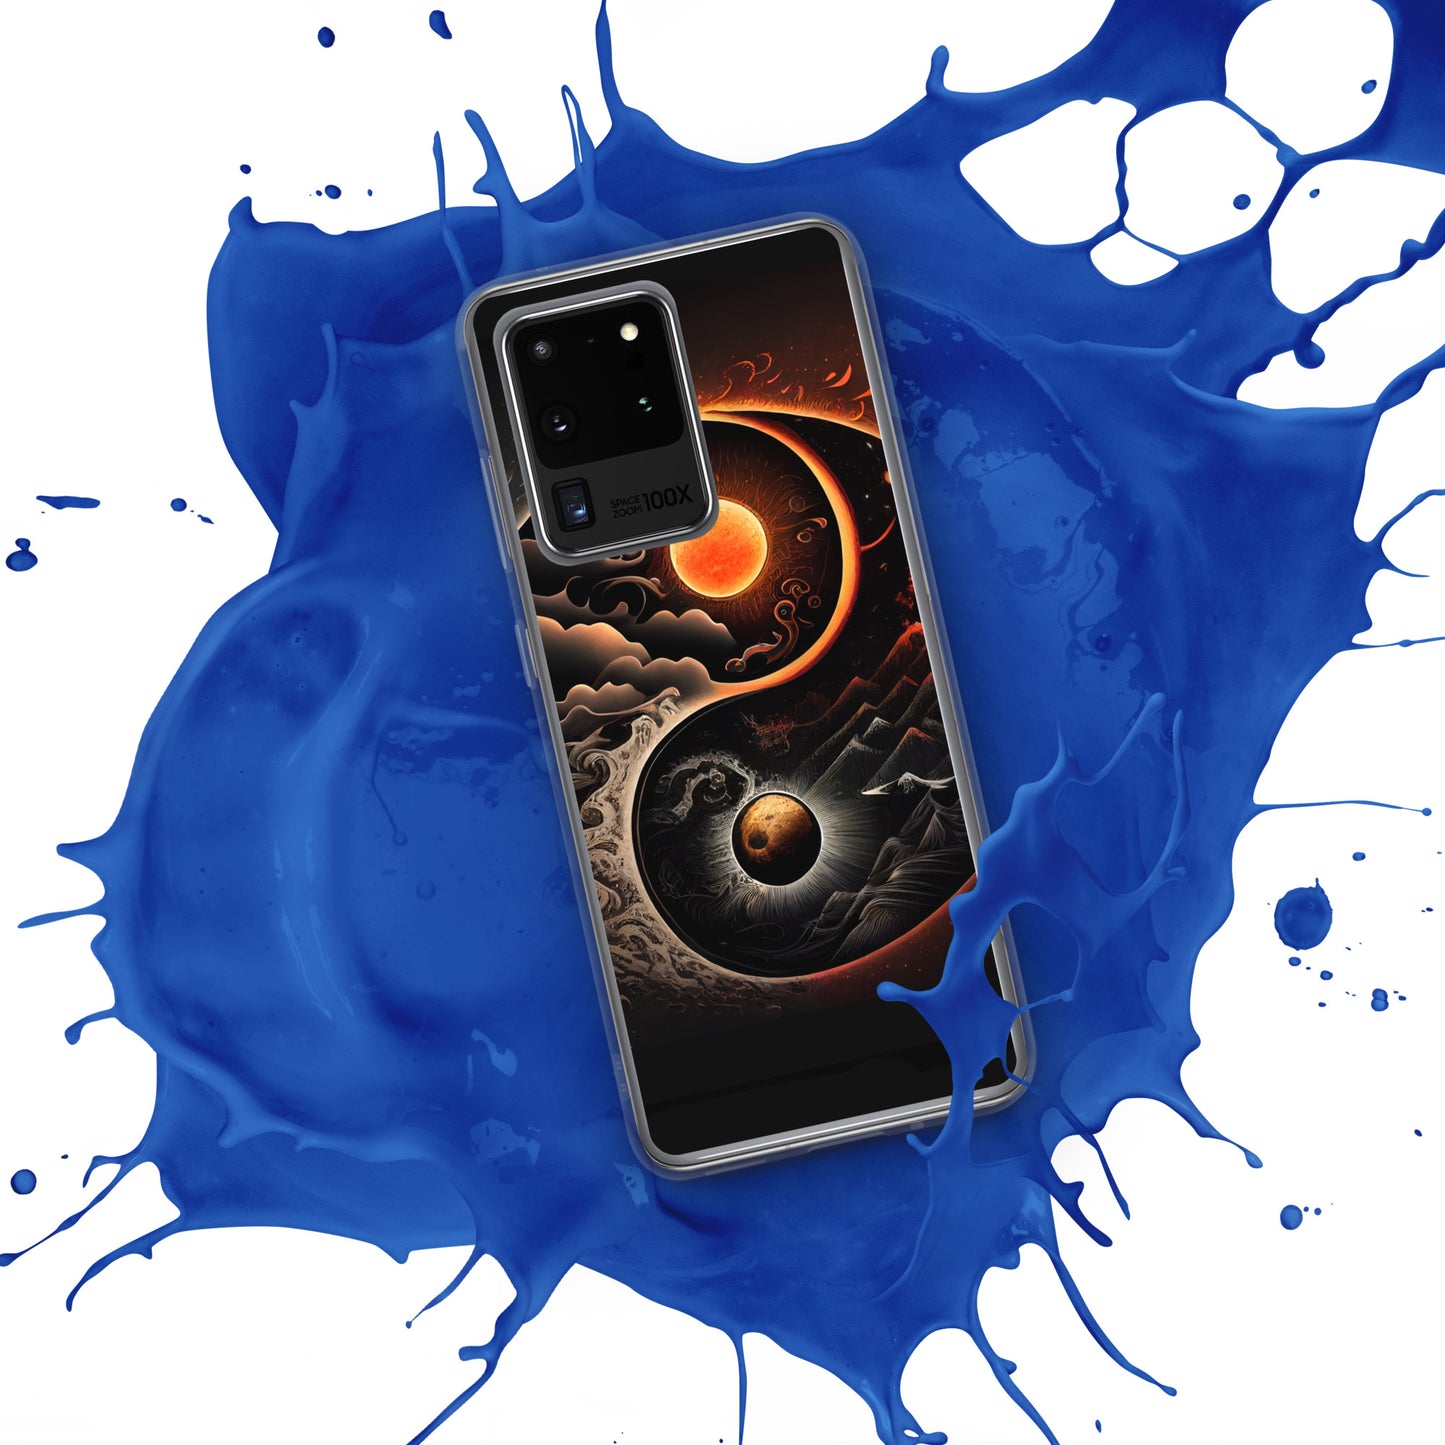 Samsung Phone MOON RIVER ZEN Case S10 S20 S21 S22 All Models